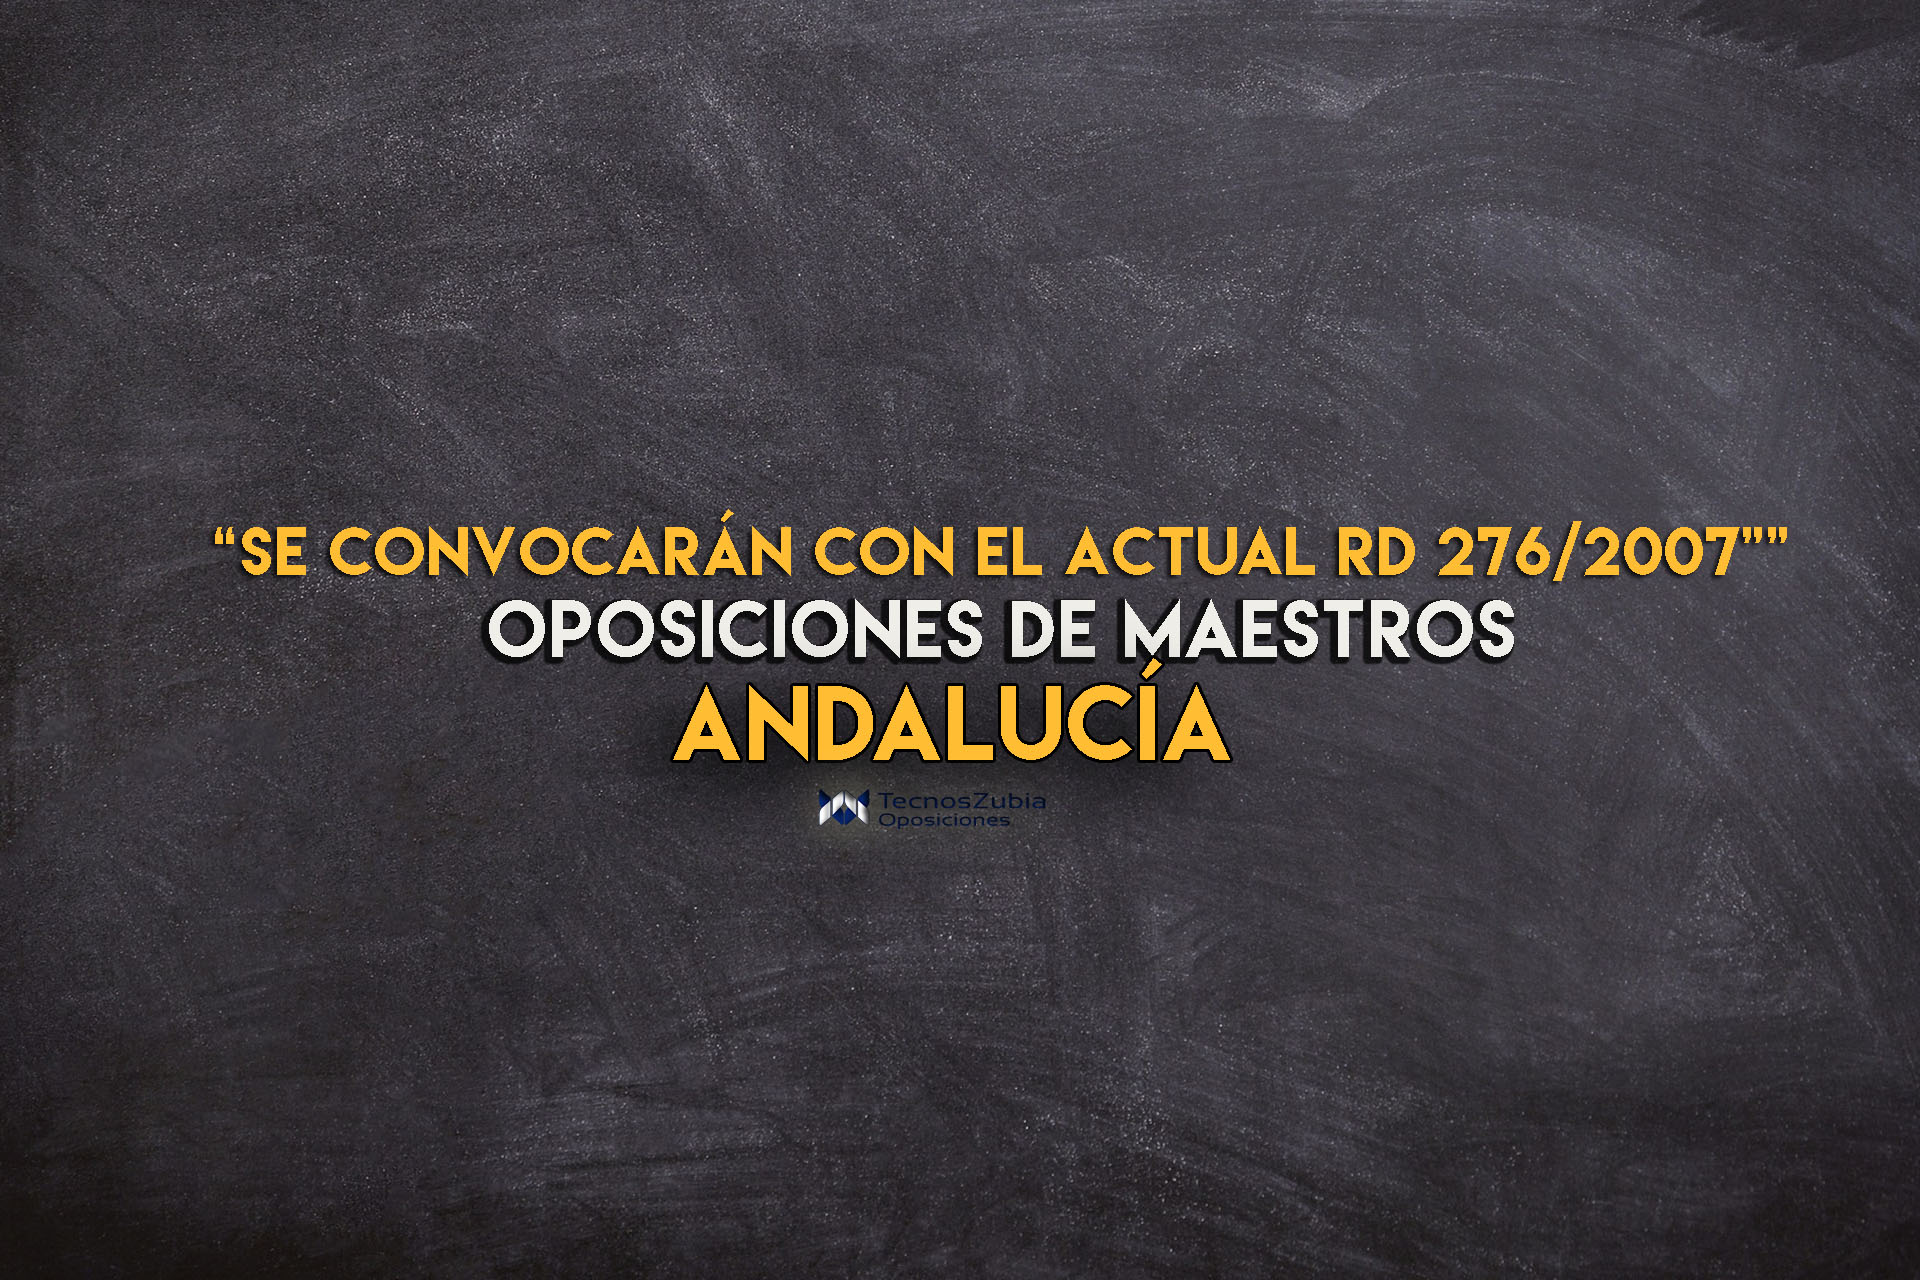 Nota informativa RD 276/2007. Andalucía. Oposiciones maestros.